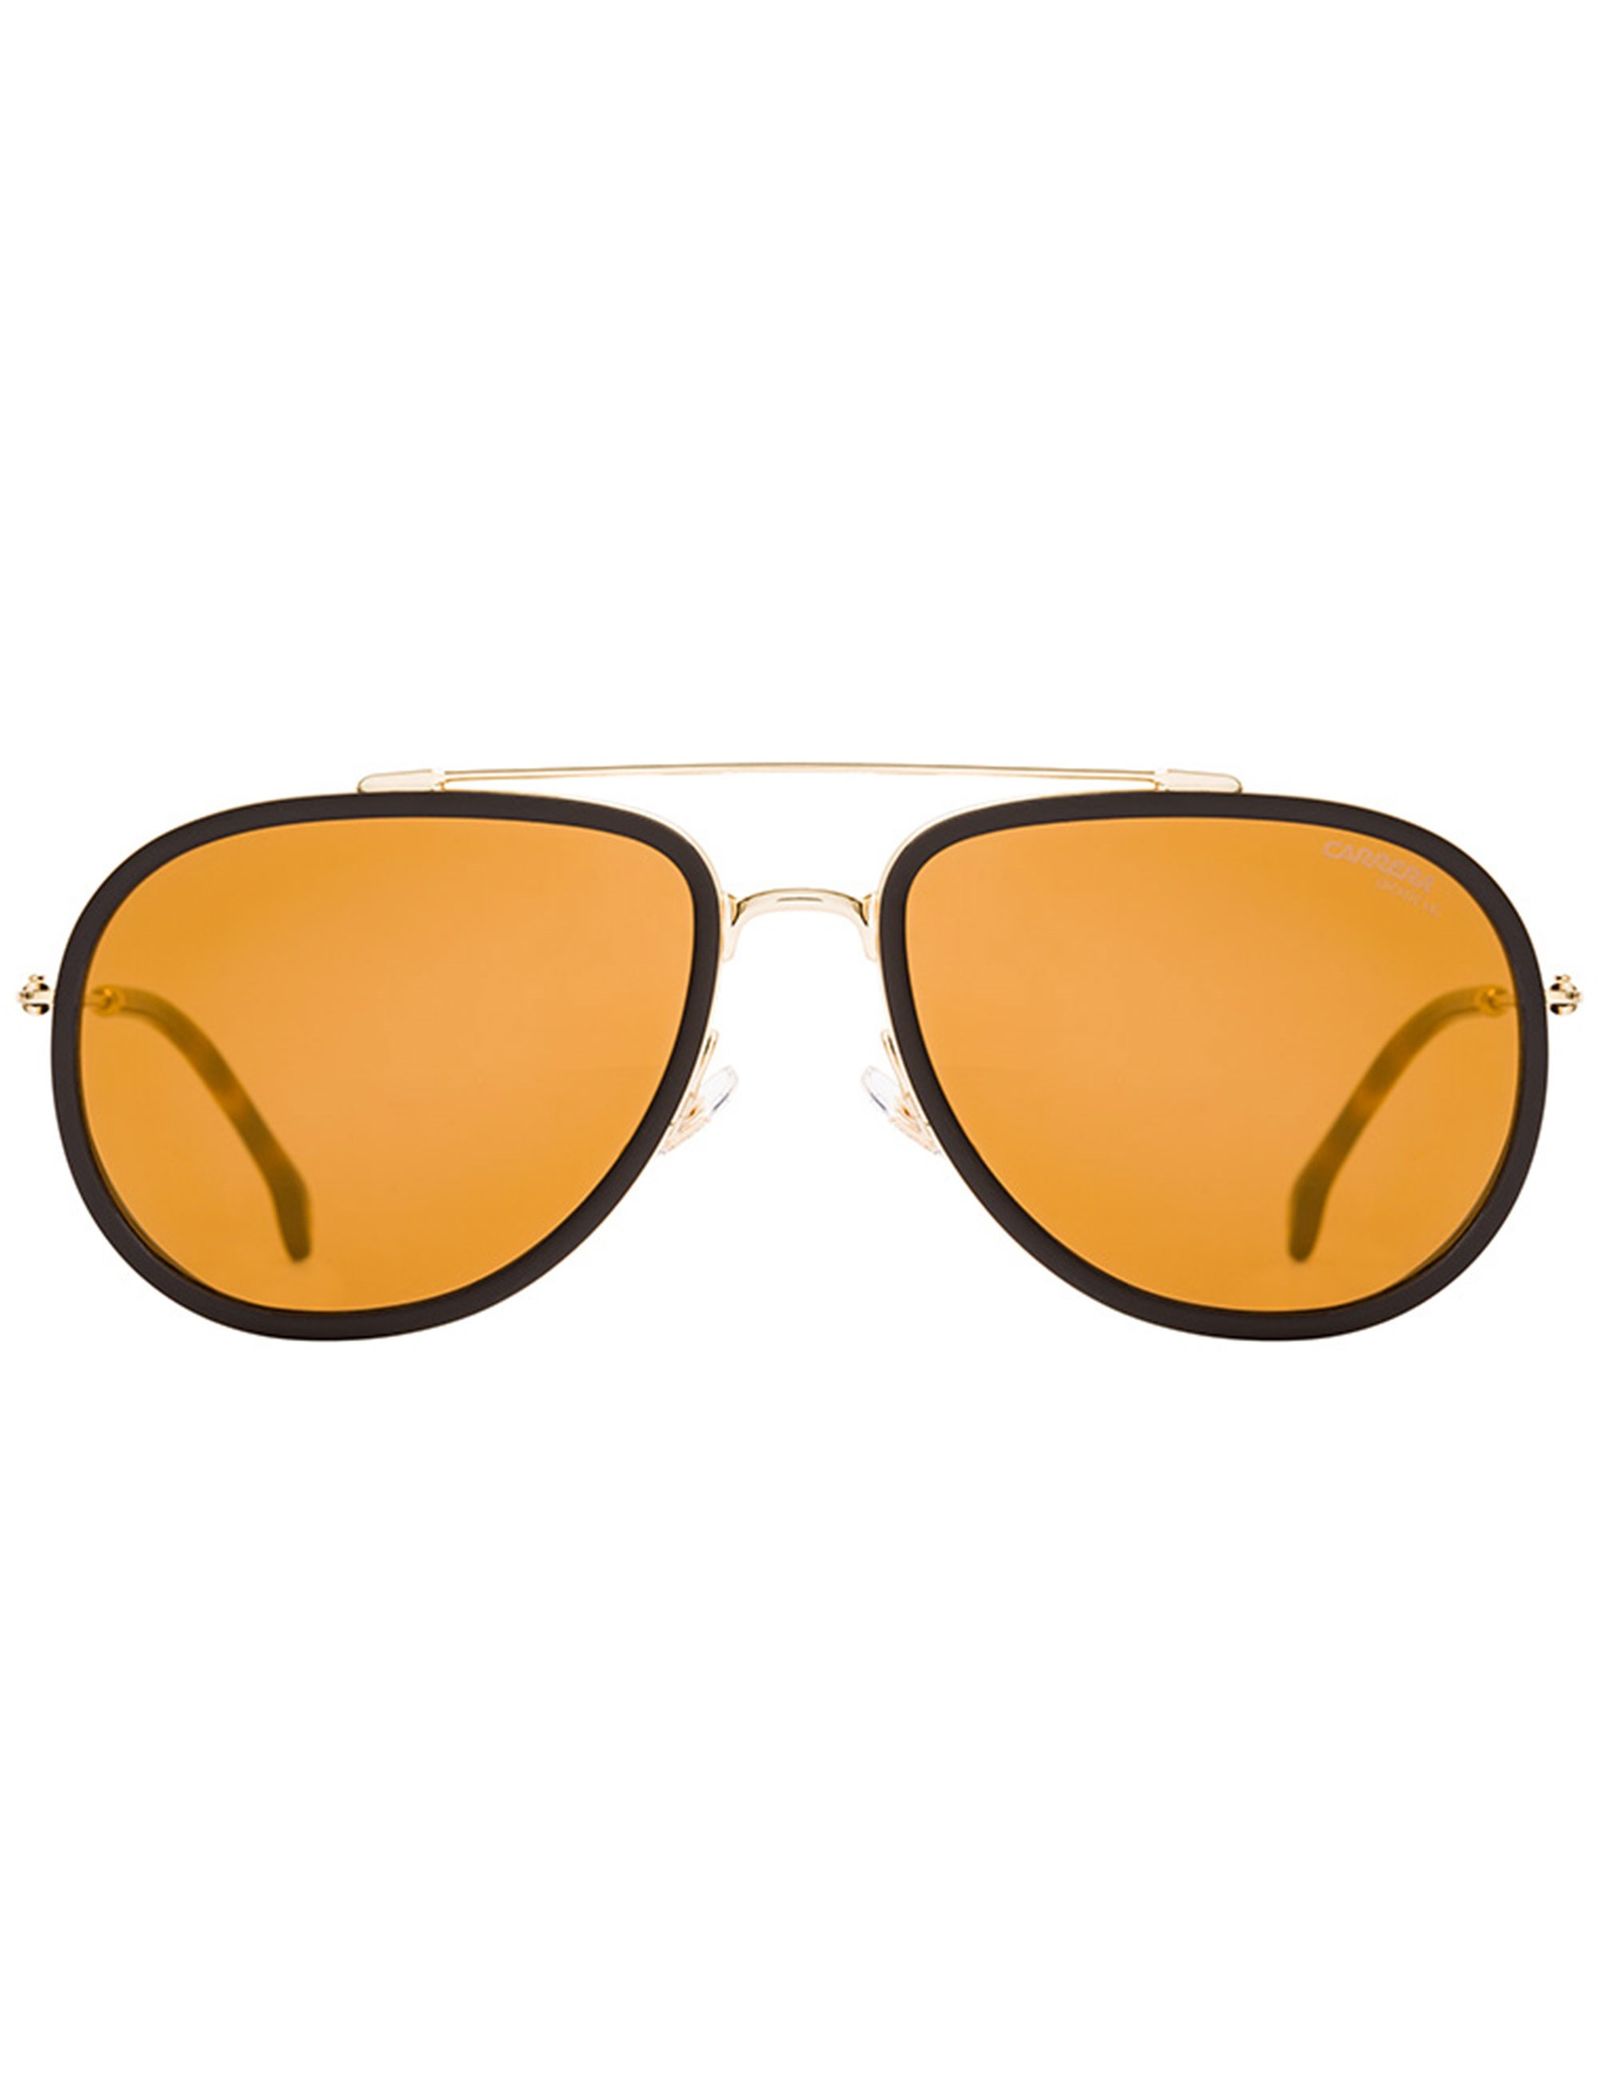 عینک آفتابی خلبانی بزرگسال - کاررا - طلايي - 2